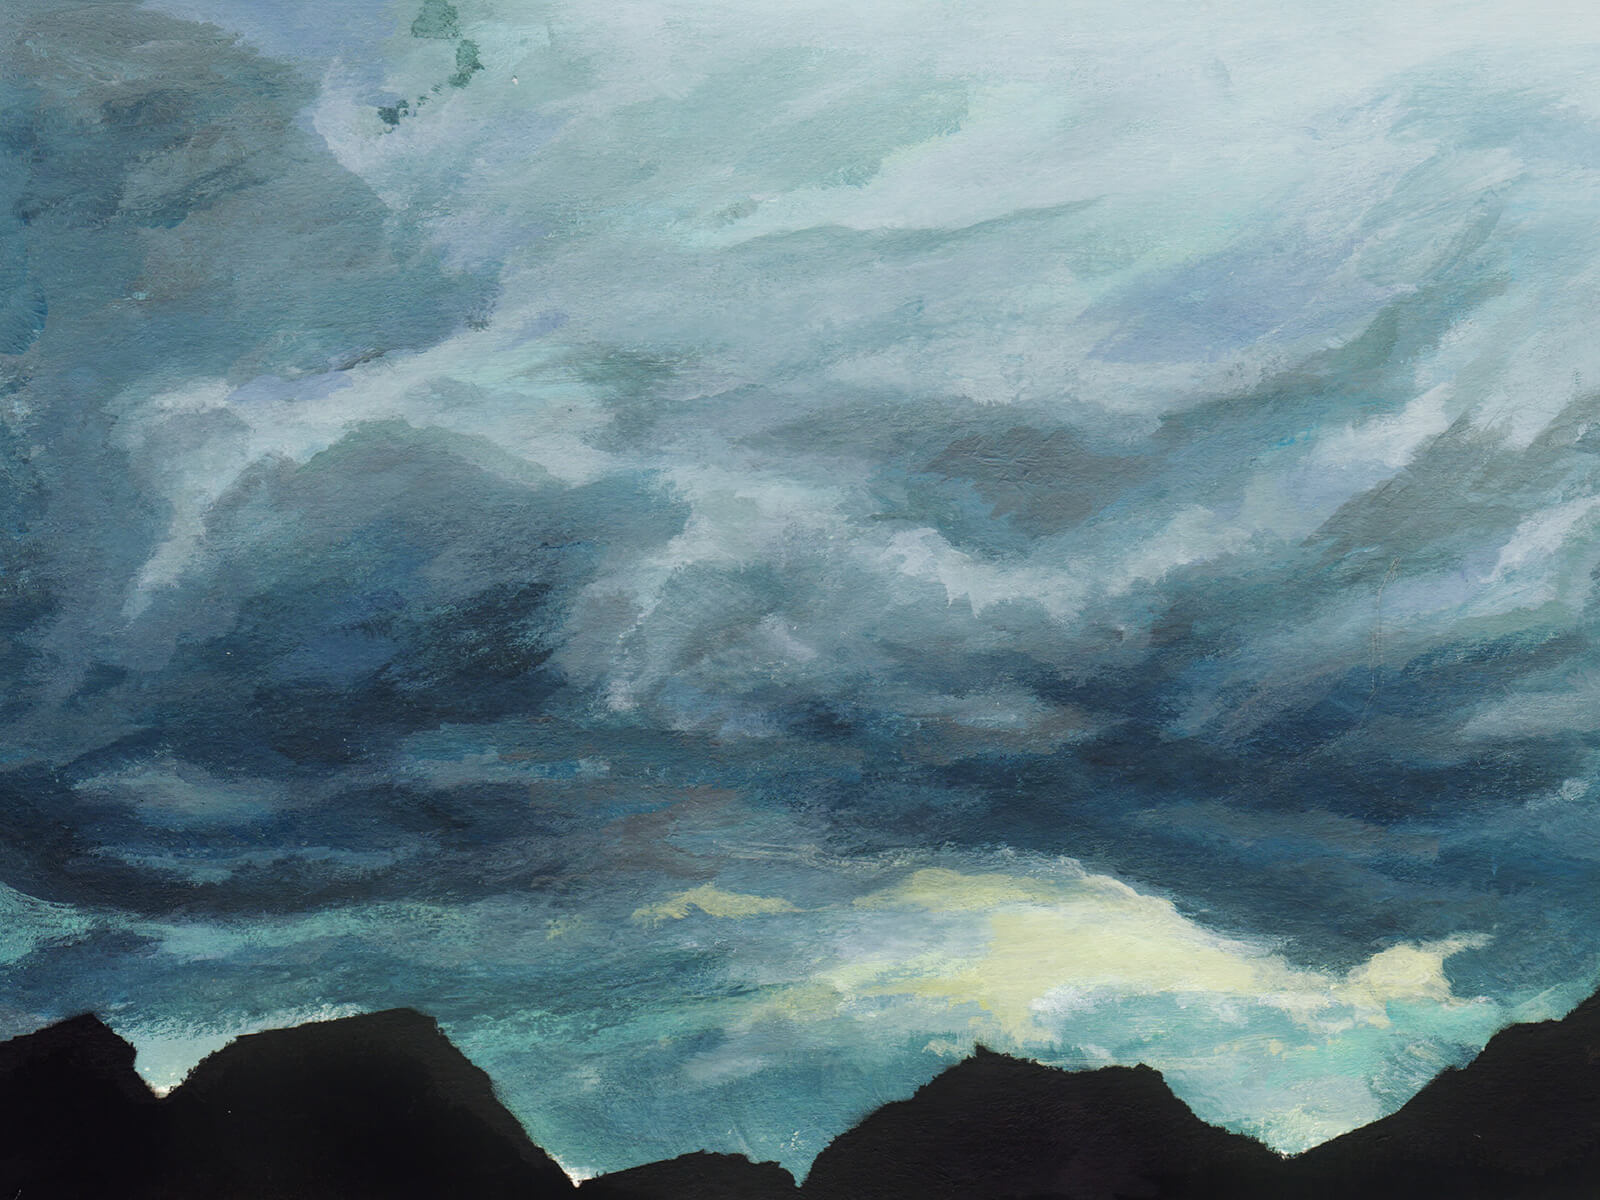 Pintura de nubes de tormenta, azul grisáceas, sobre los picos de unas montañas negras.